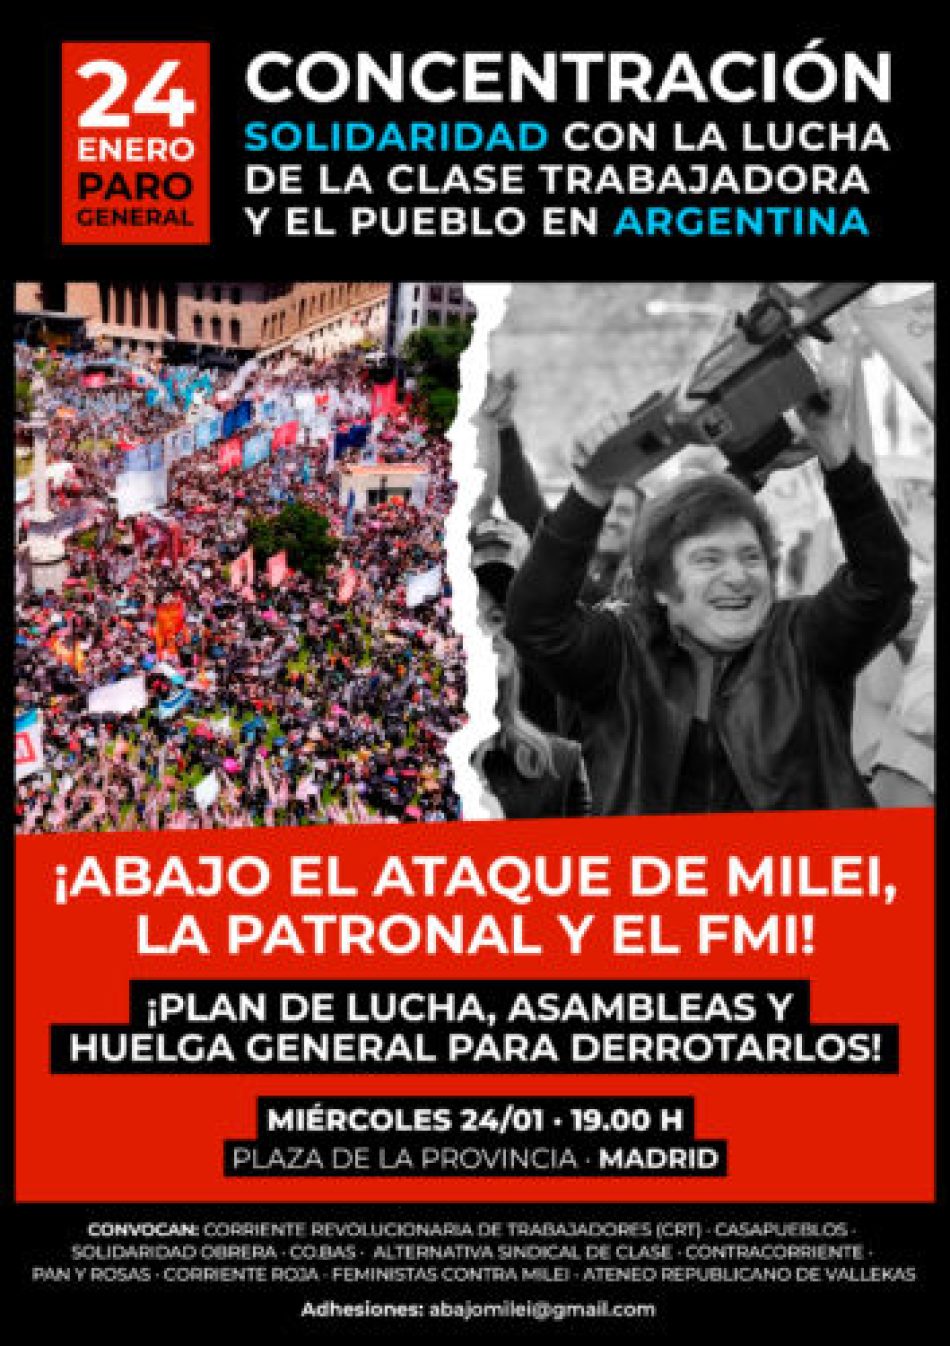 Sindicatos, organizaciones sociales y políticas se movilizarán el 24 de enero en Madrid en solidaridad con el paro general en Argentina